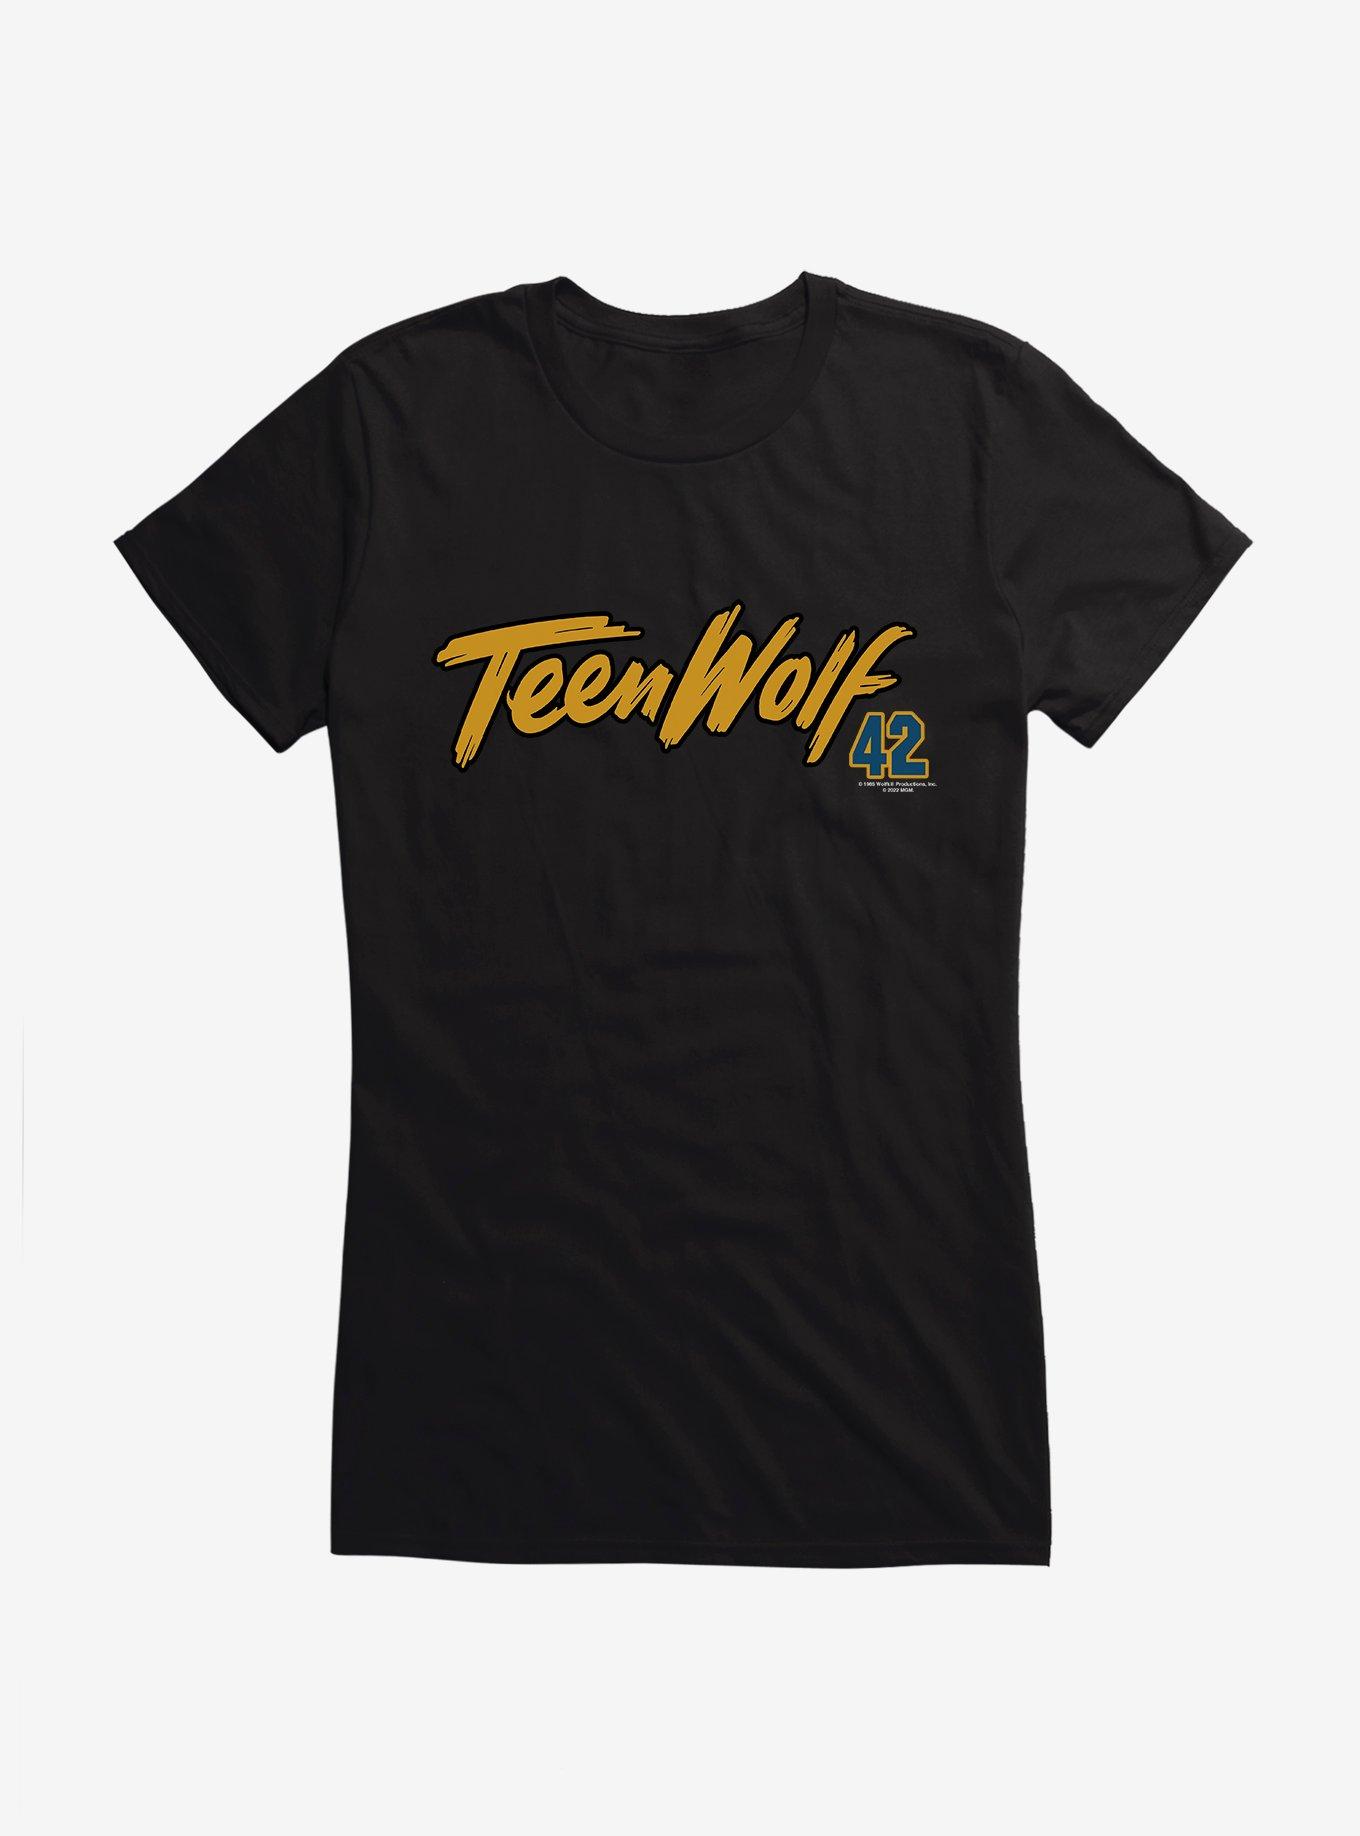 Teen Wolf TeenWolf 42 Girls T-Shirt, , hi-res